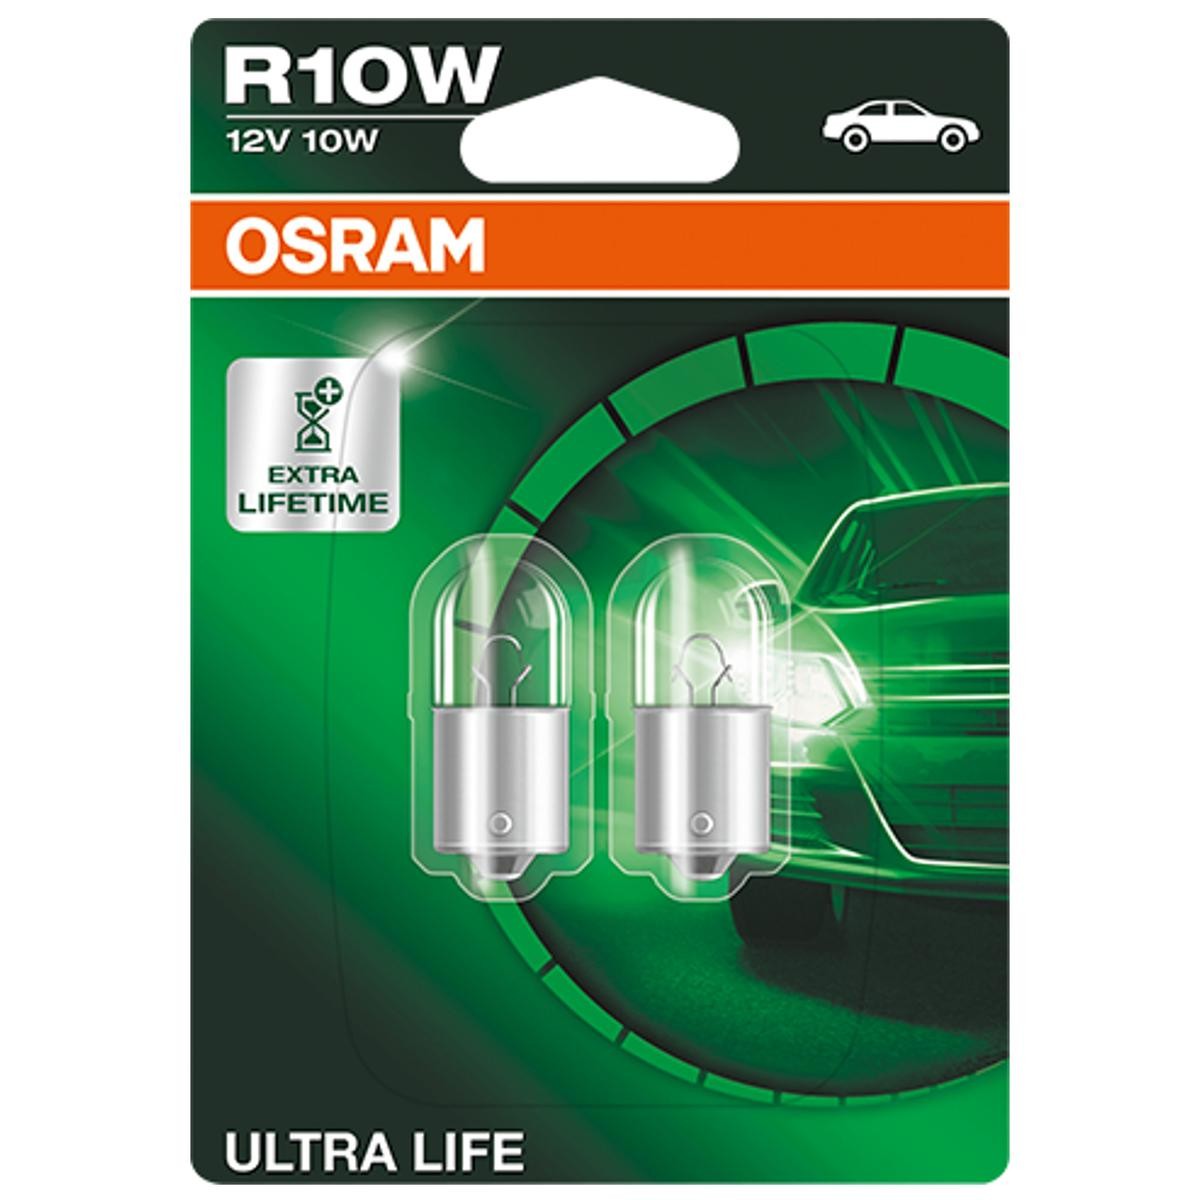 R10W OSRAM ULTRA LIFE 12V 10W, R10W Bulb, indicator 5008ULT-02B buy